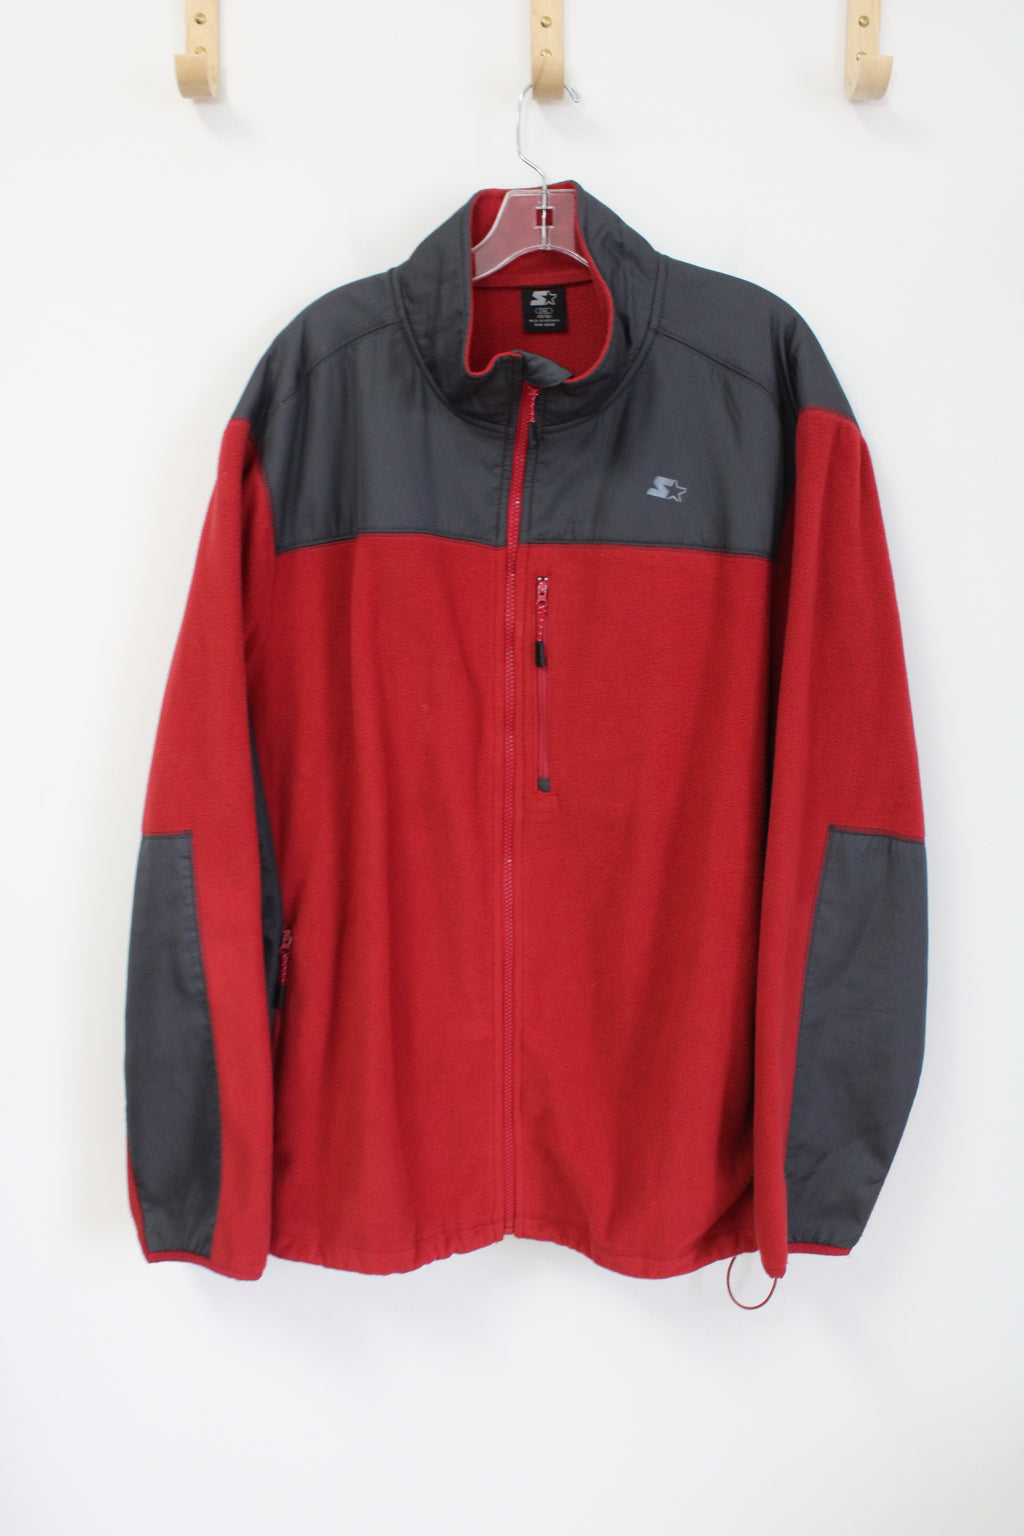 Starter Red Fleece Jacket | 2XL